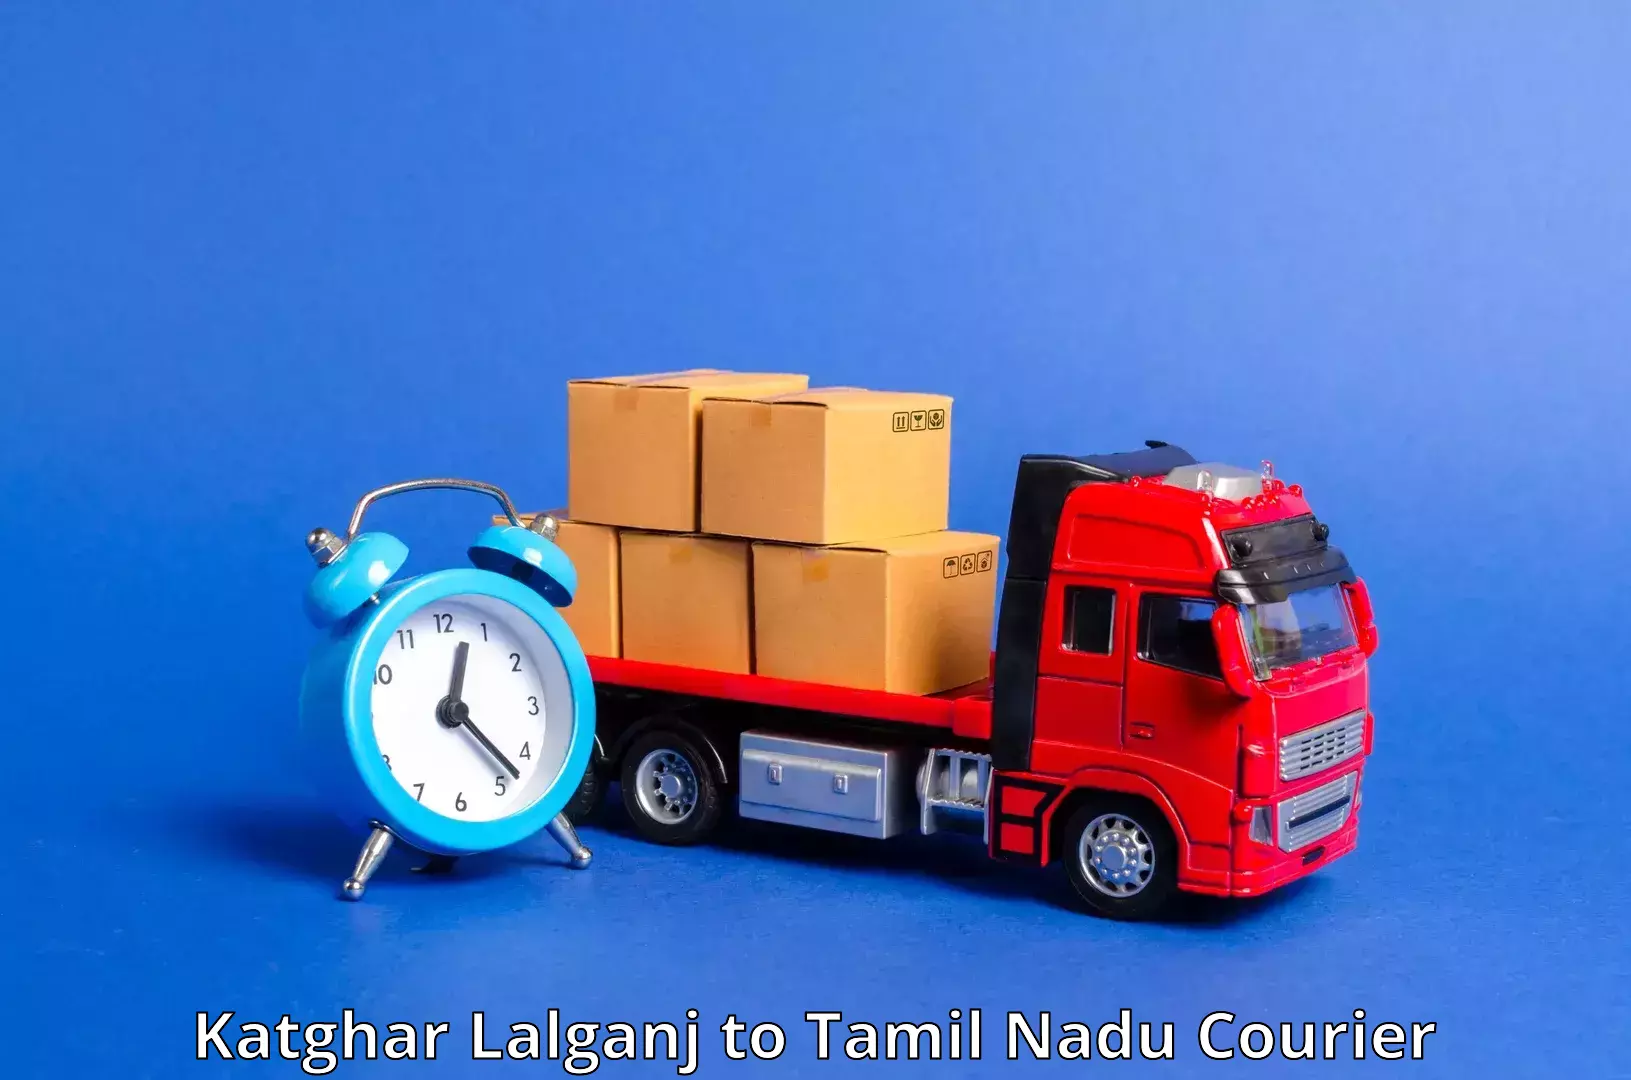 Professional courier handling Katghar Lalganj to Ariyalur